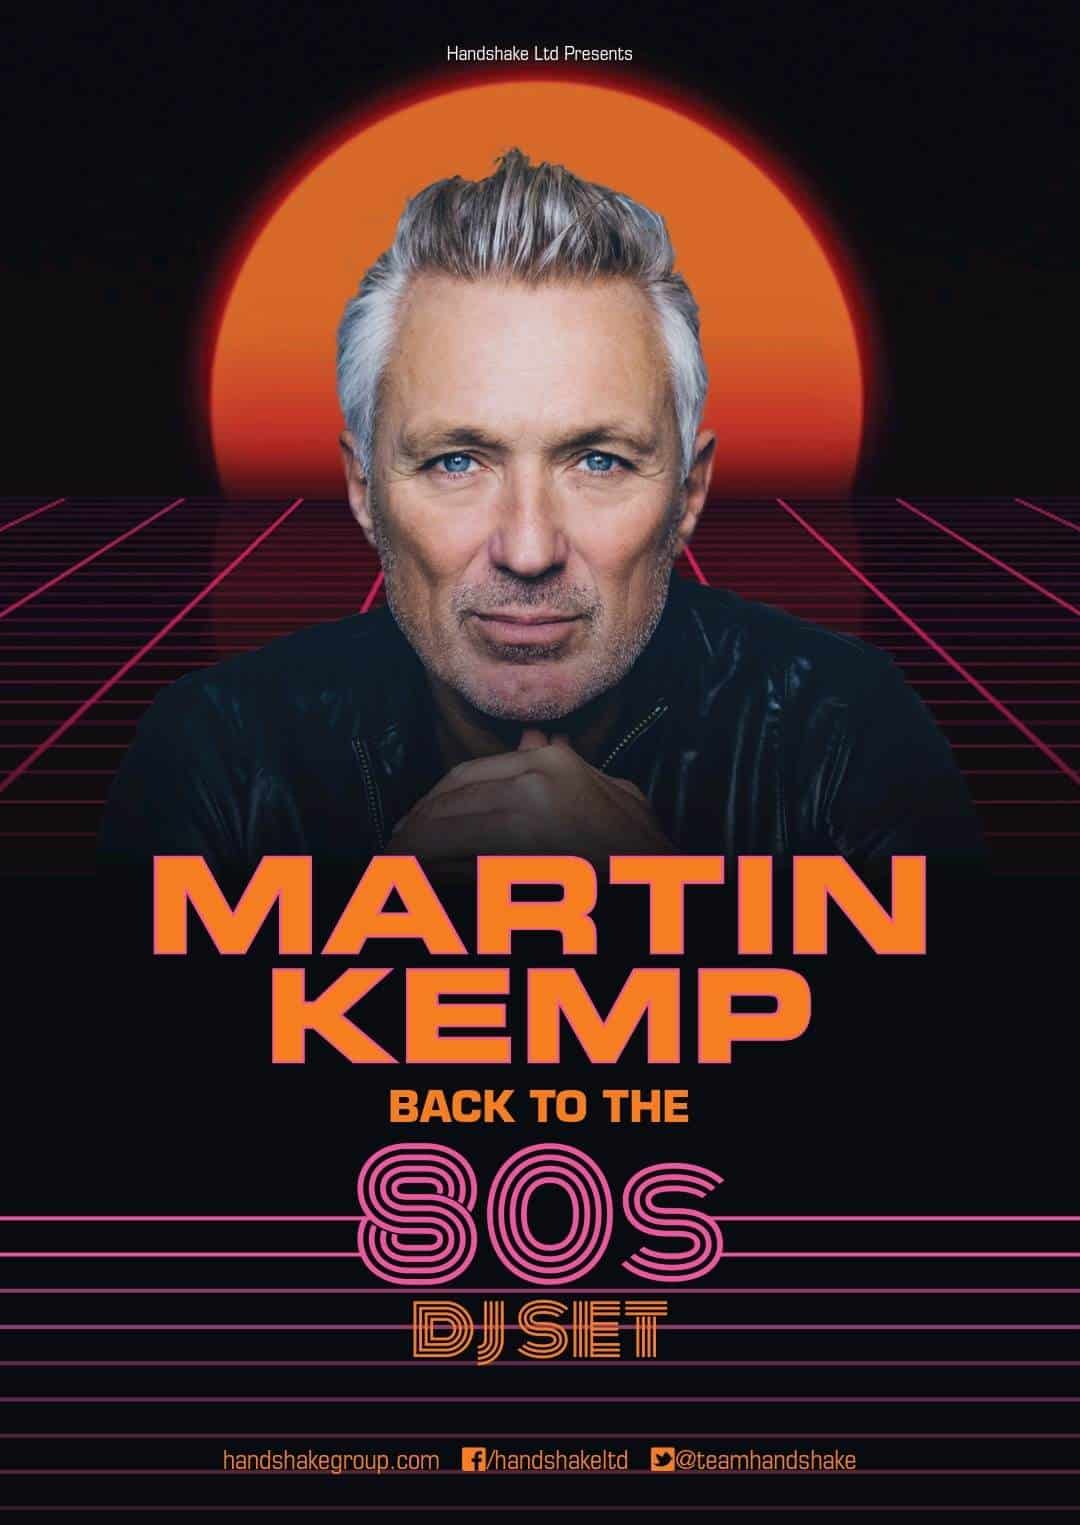 Martin Kemp back to the 80s DJ set